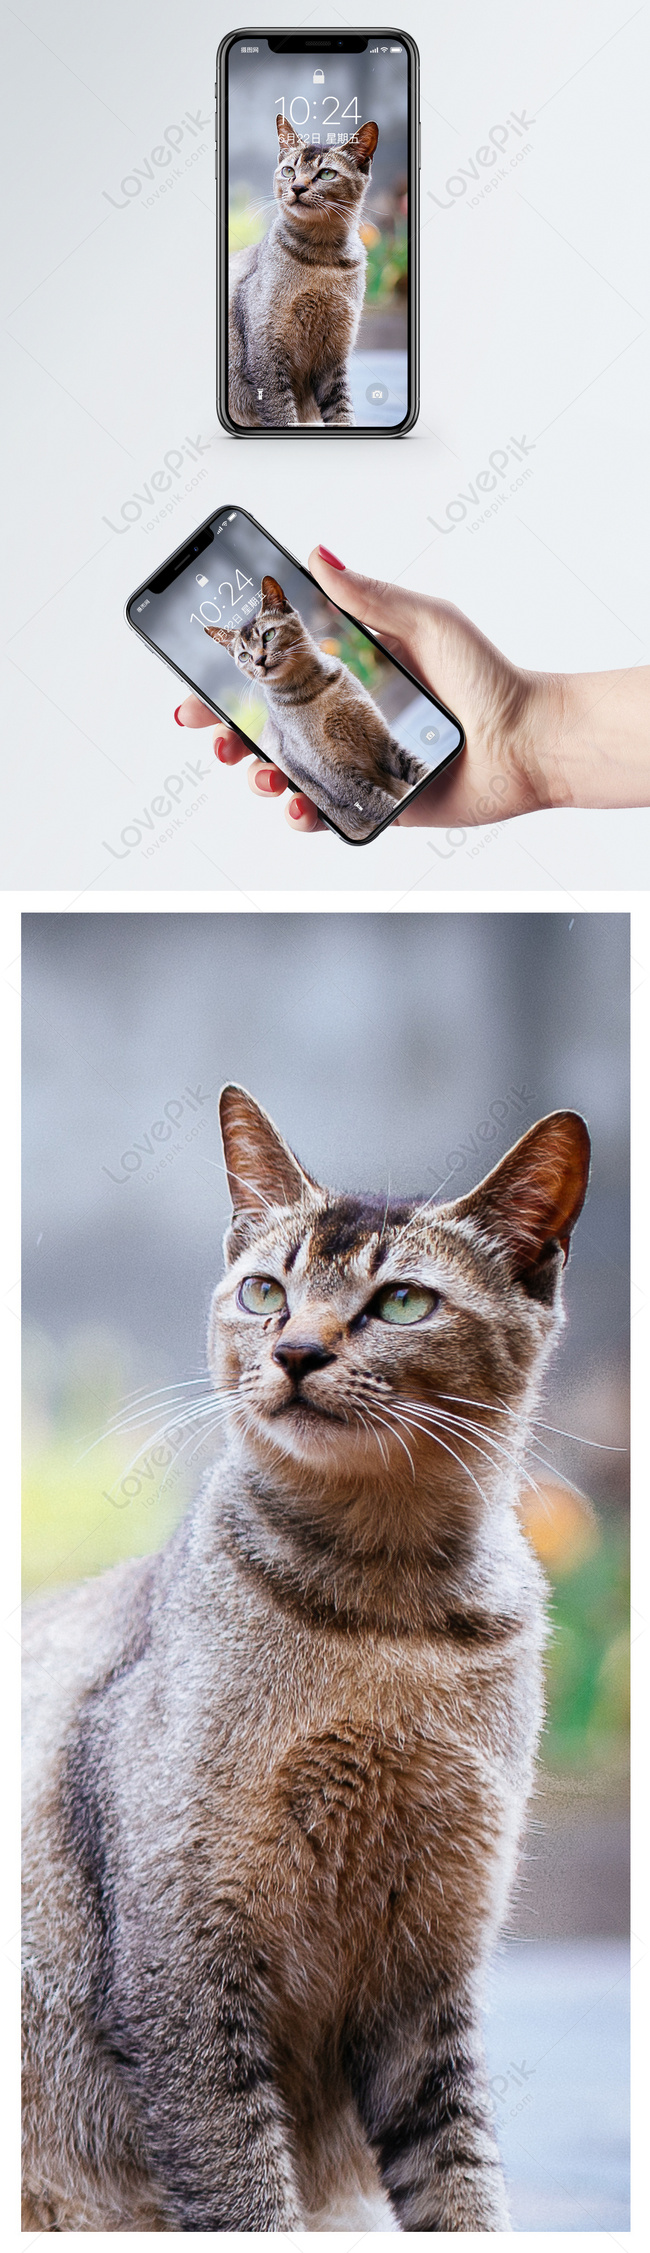 Mèo hình nền : Sự dễ thương và lựa chọn tuyệt vời cho màn hình điện thoại  của bạn